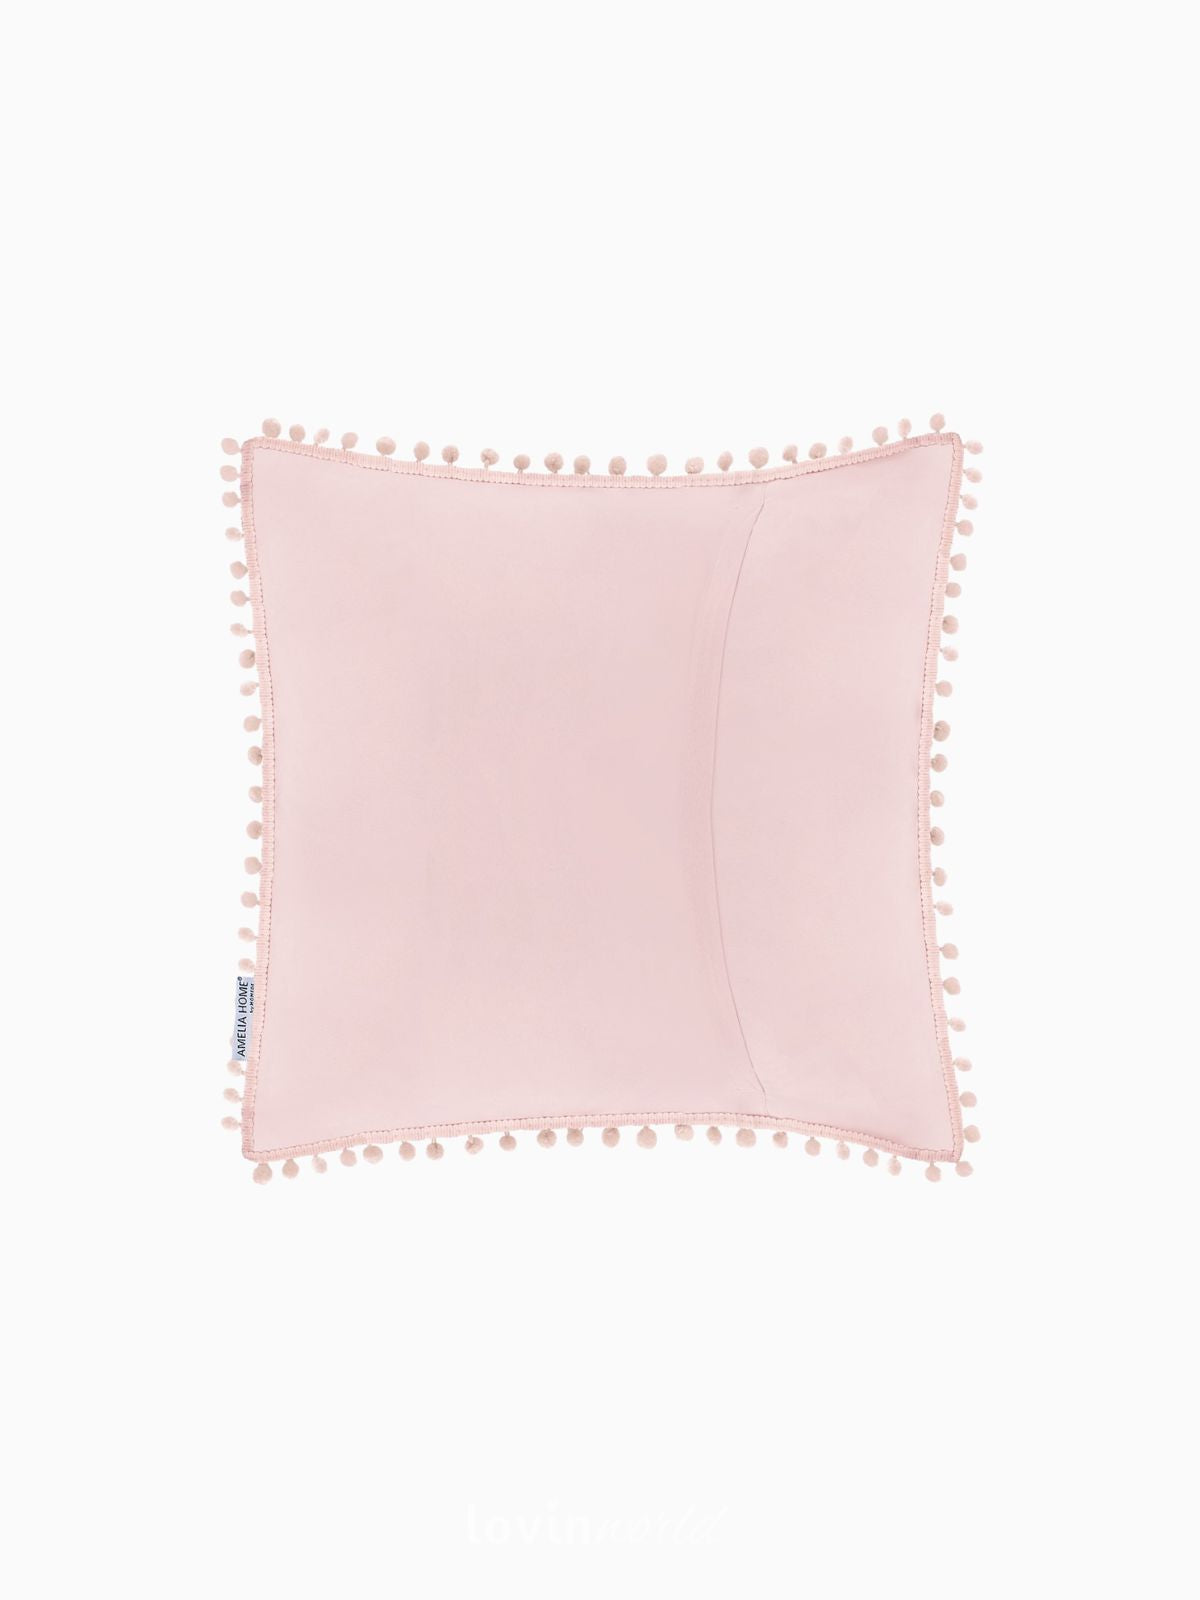 Cuscino decorativo Meadore in colore rosa 45x45 cm.-2